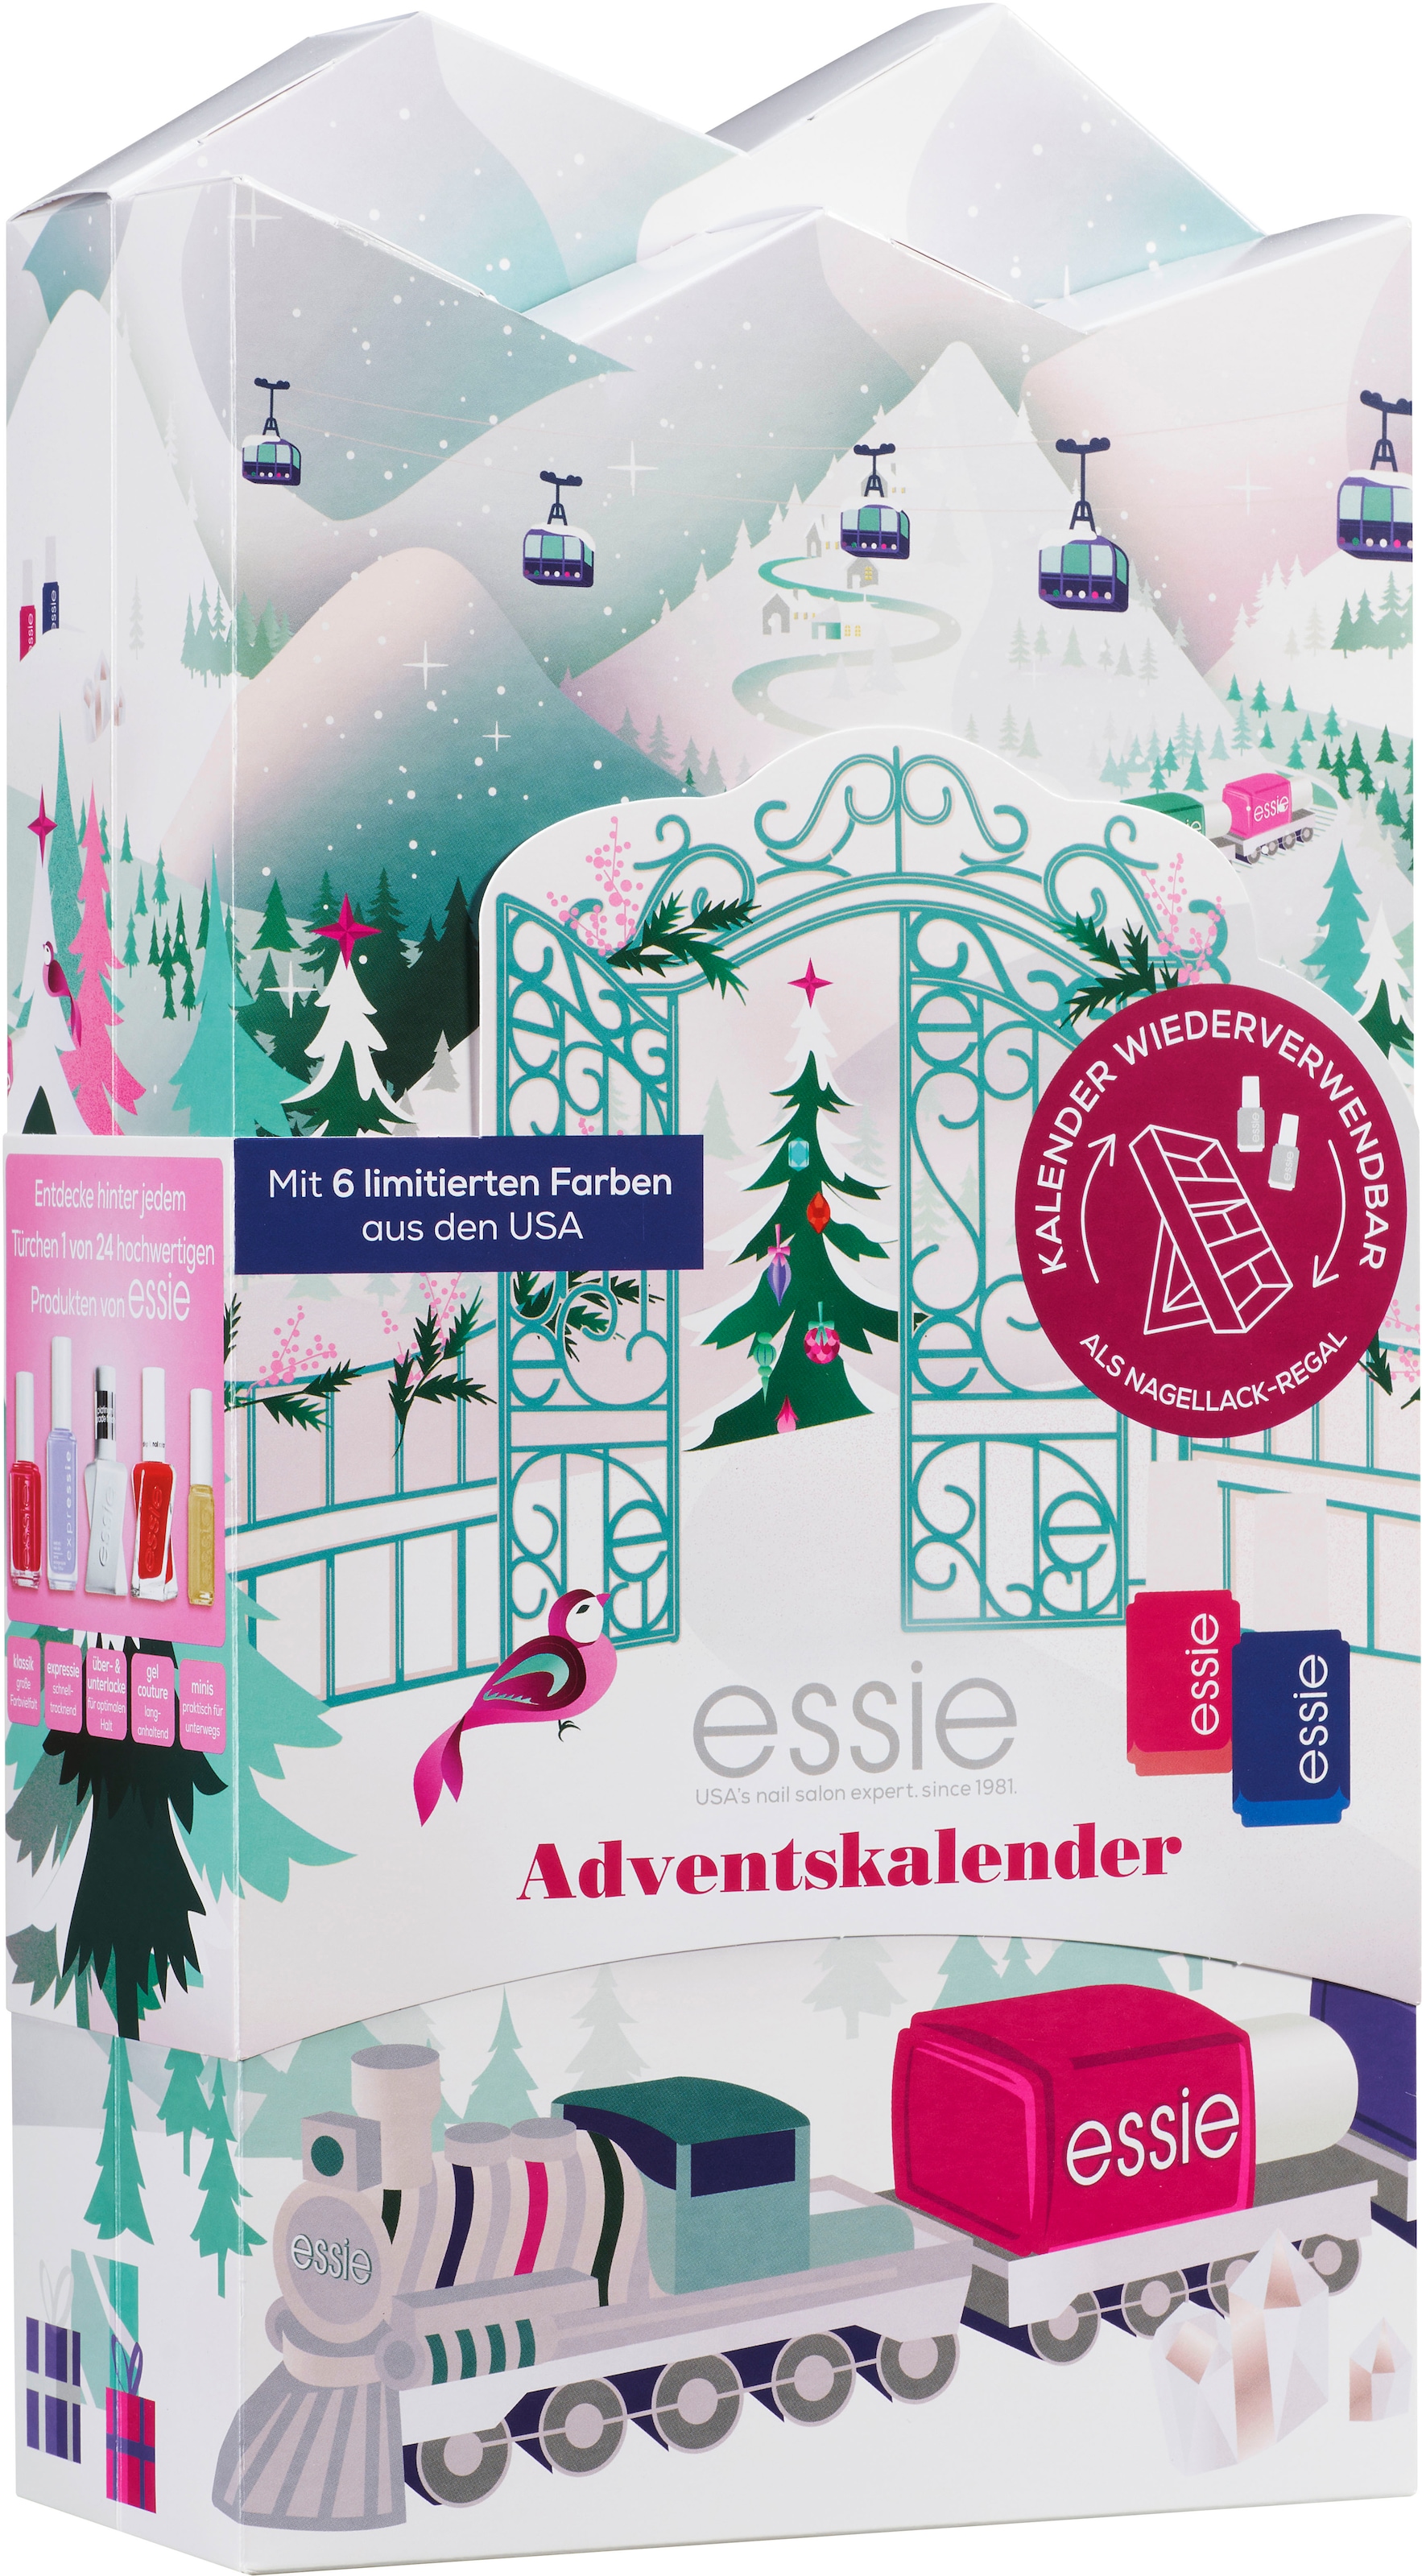 essie Adventskalender »Nagellack-Set« im kaufen Online-Shop